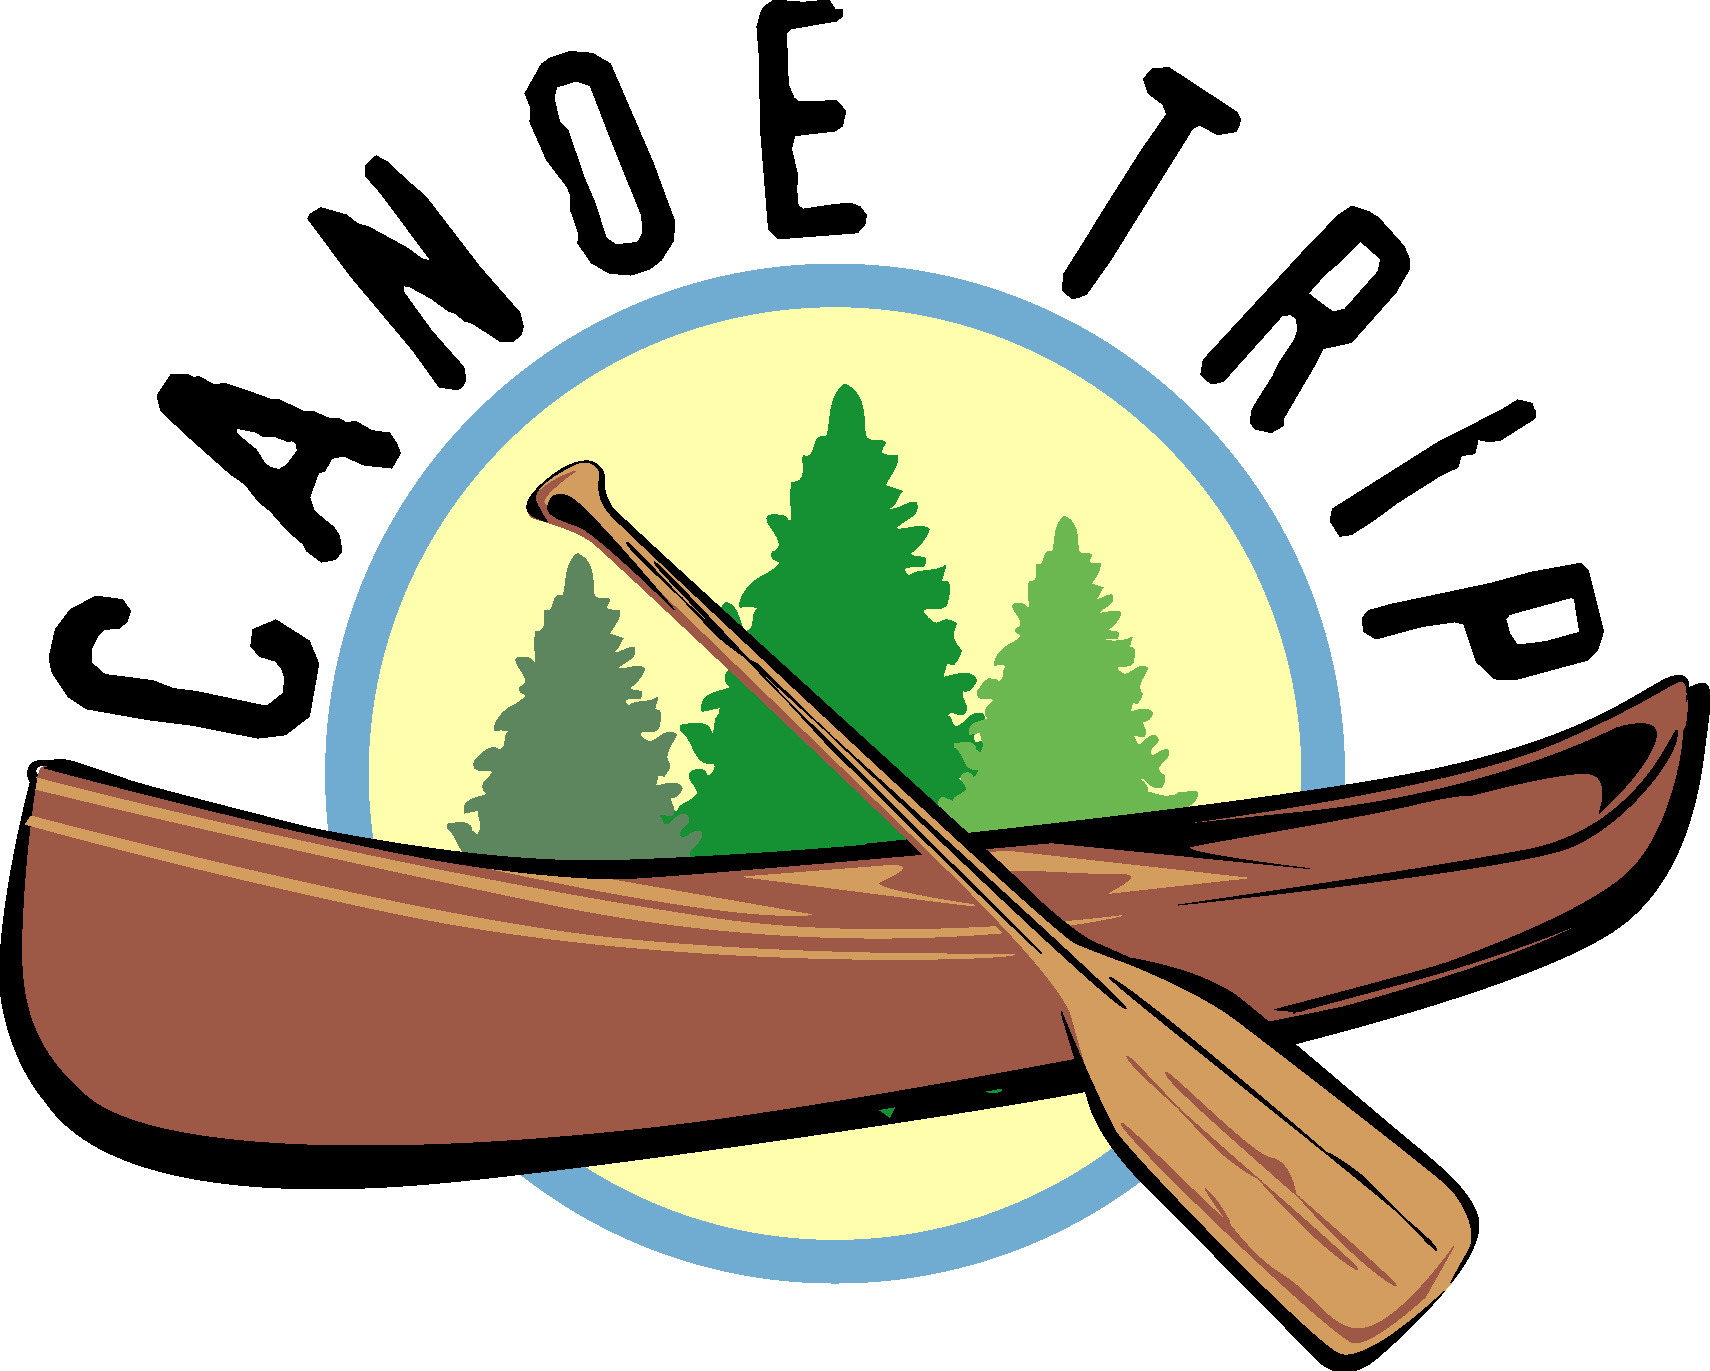 Canoe cliparts